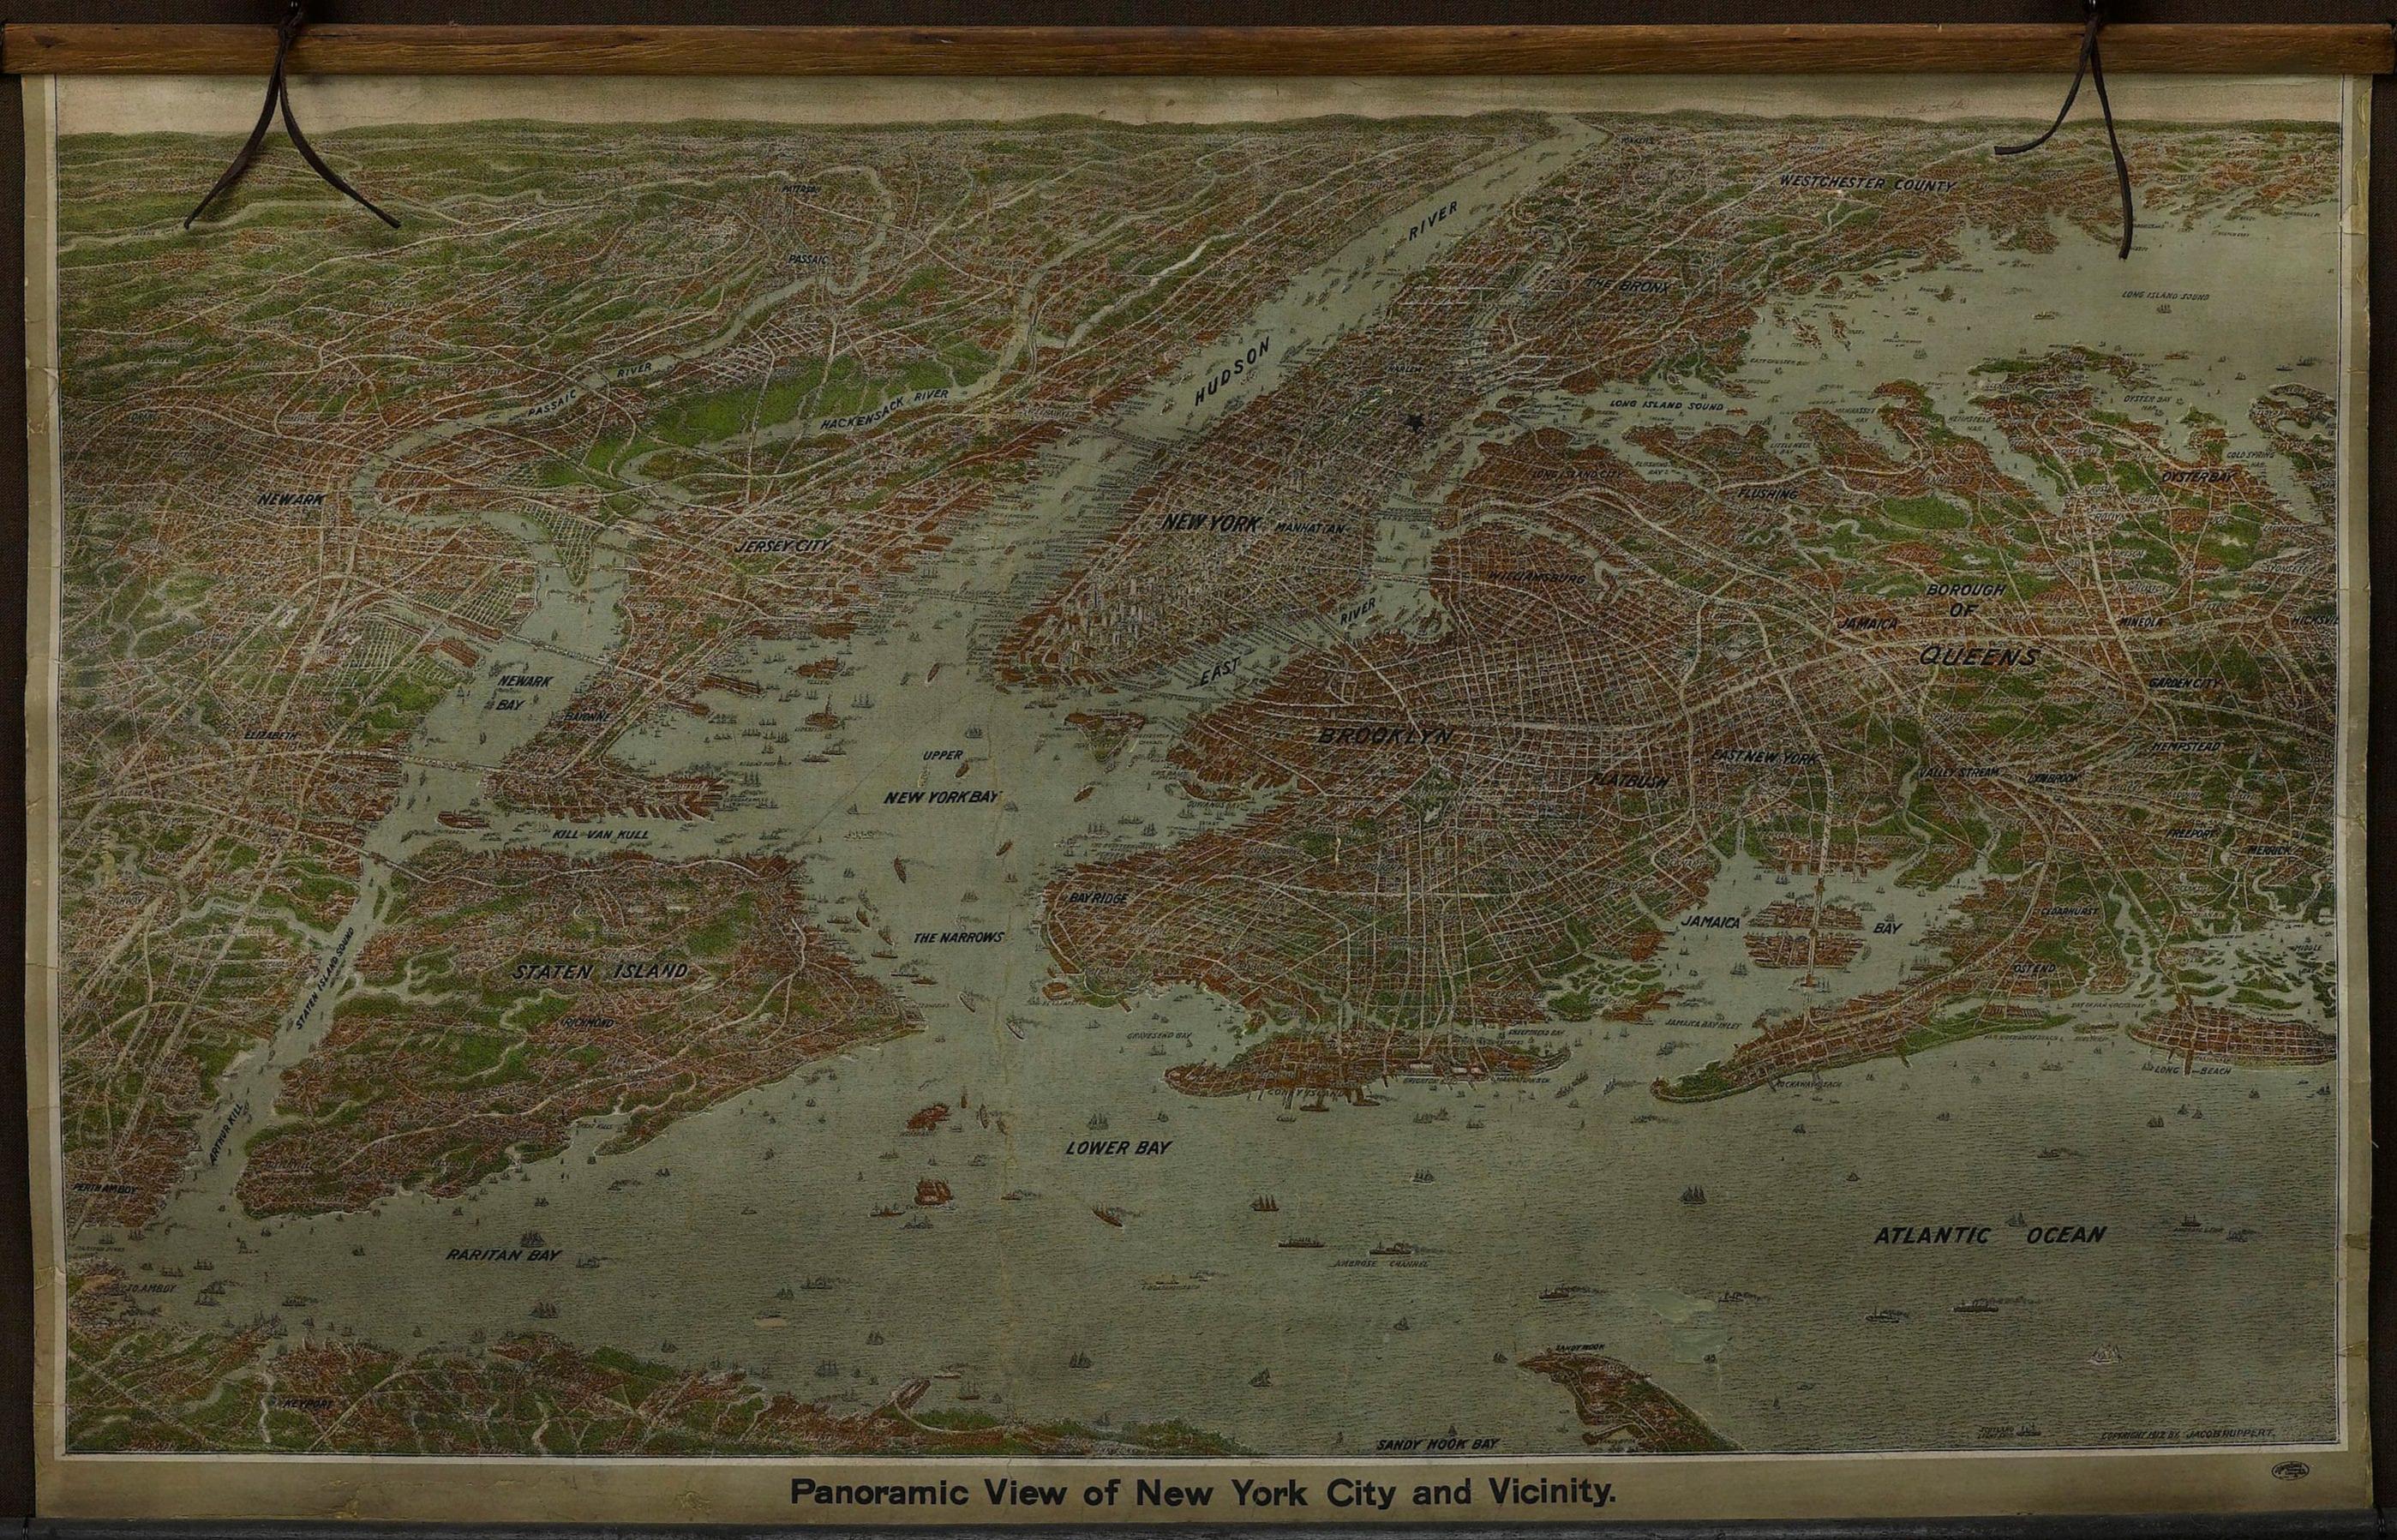 Il s'agit d'une jolie et très rare carte de New York, publiée par le brasseur de Yorkville Jacob Ruppert en 1912. La carte montre une vue étendue de la région qui s'étend de Sandy Hook au sud et Yonkers au nord, à Hicksville à l'est et au-delà de